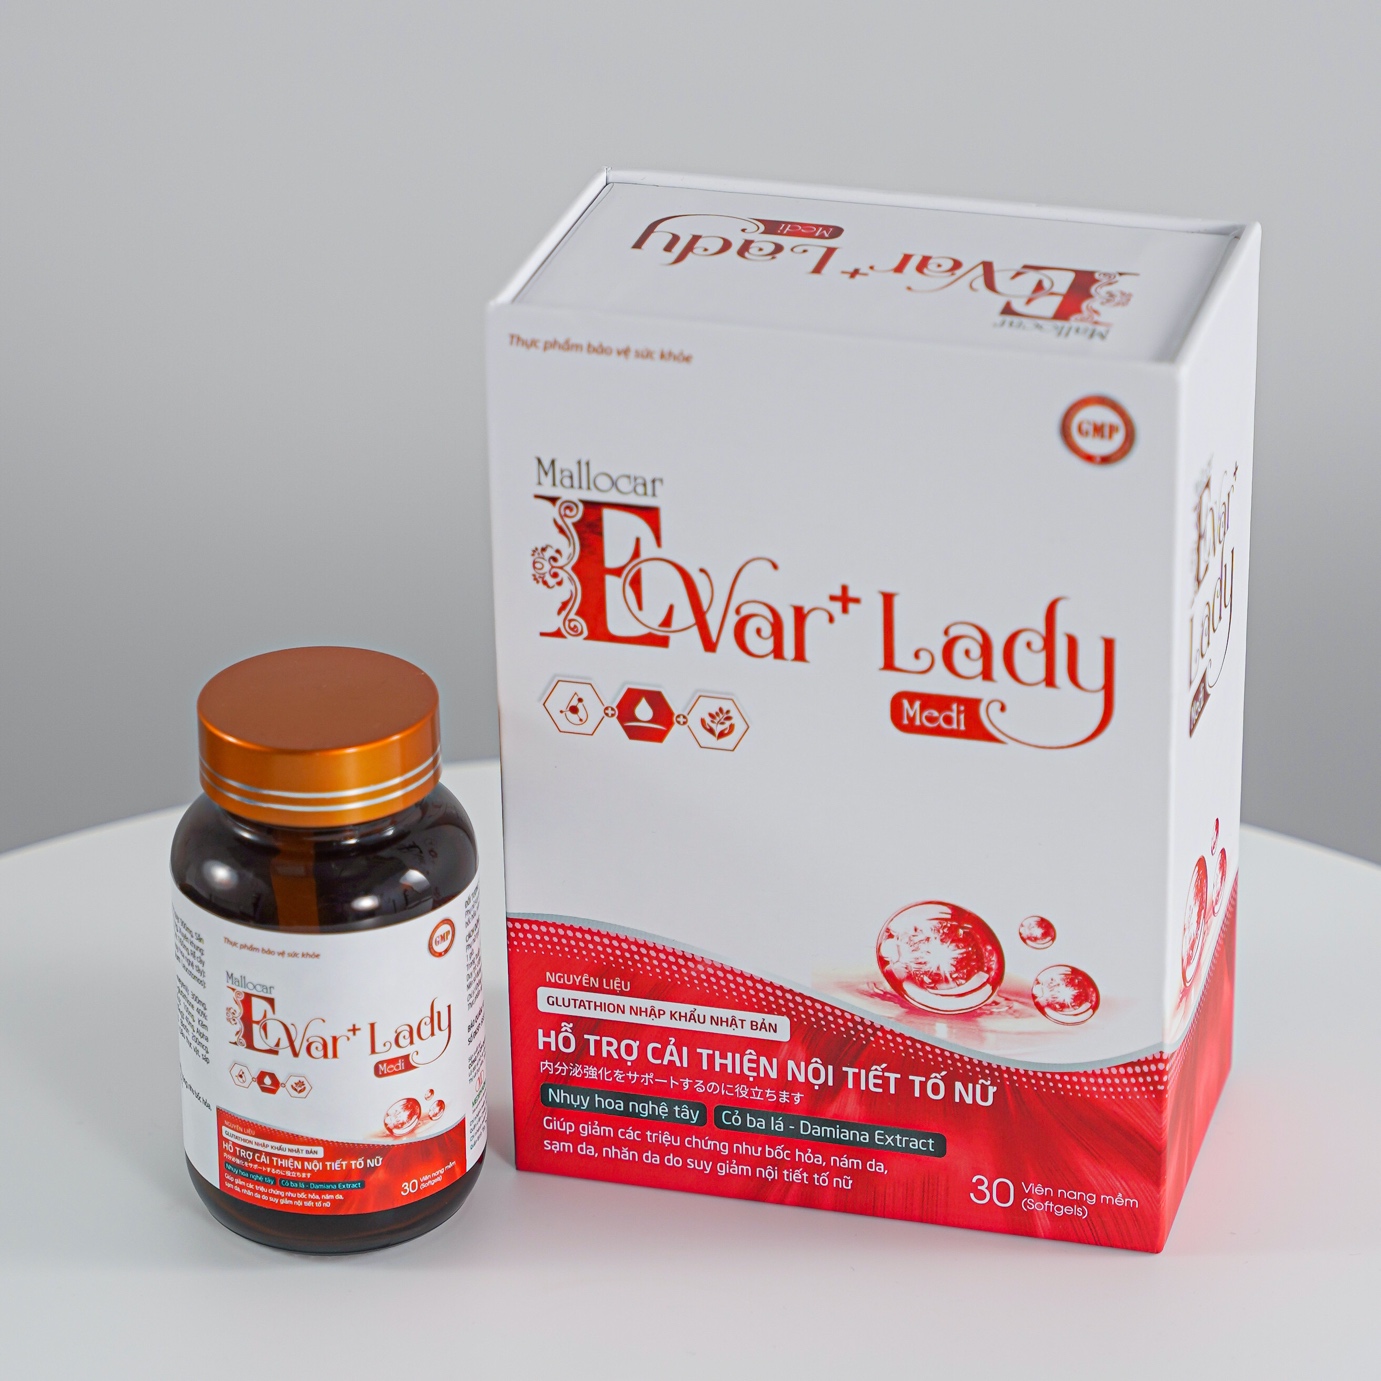 Cải thiện nội tiết tố nữ - Viên uống hỗ trợ Mallocar Evar+ Lady Medi - 2